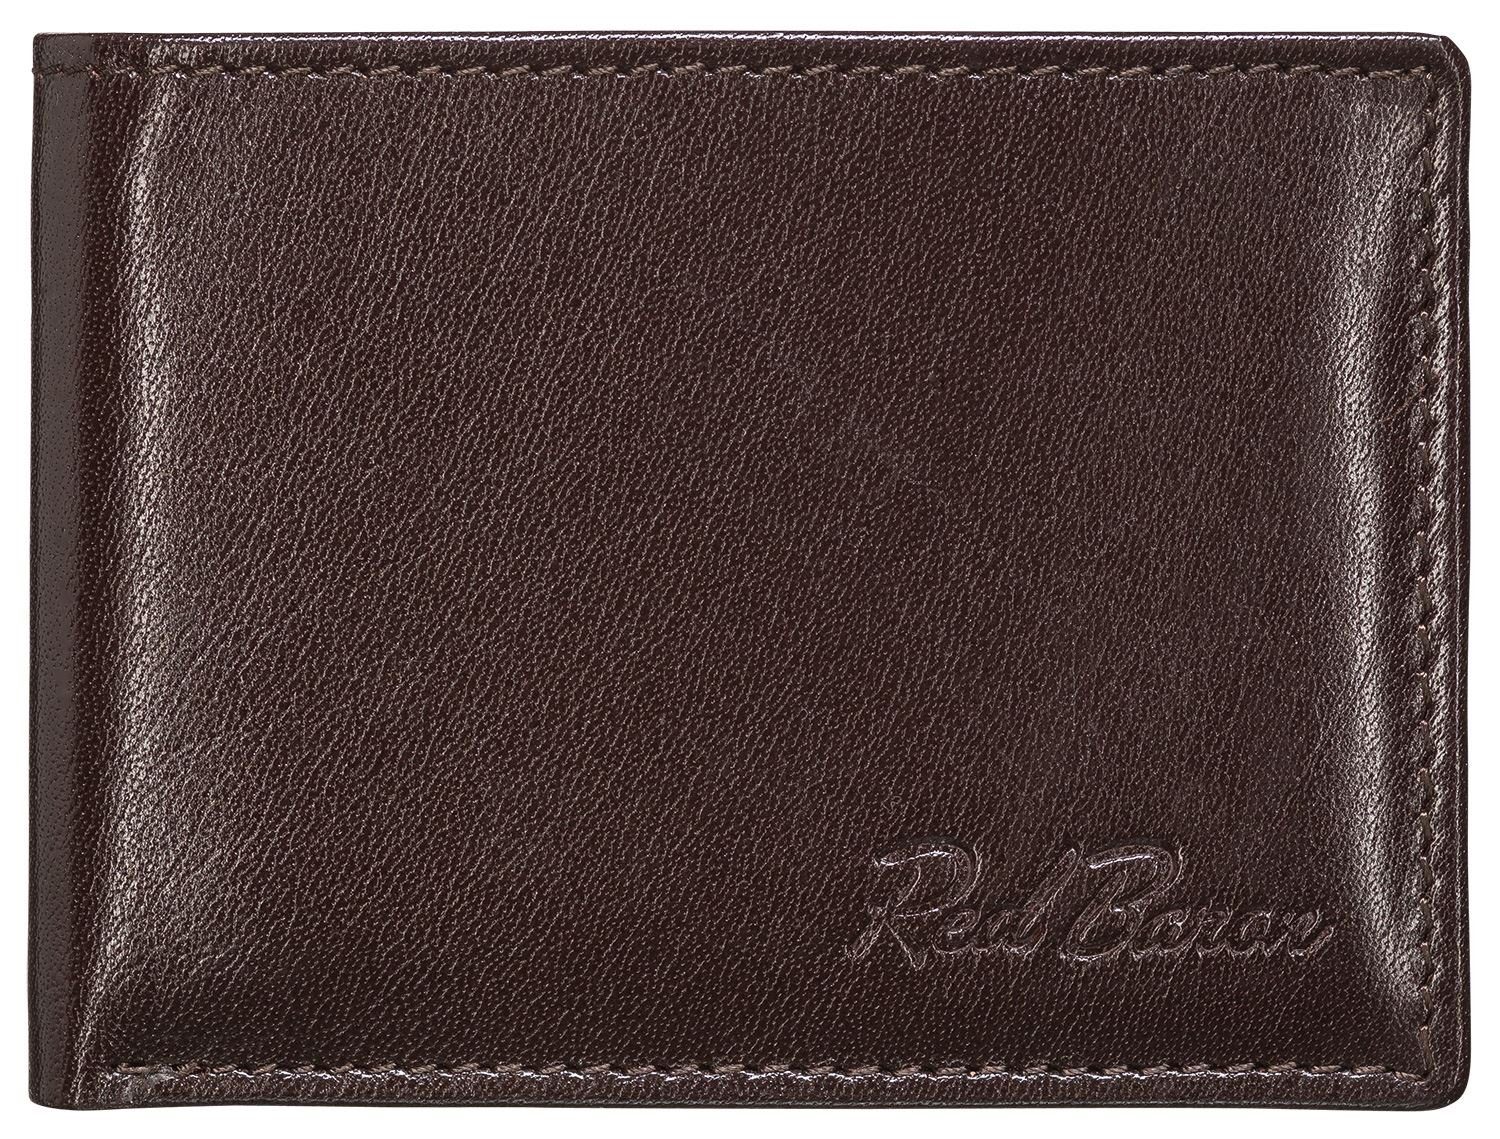 Red Baron Geldbörse mit Münzfach Druckknopf 1-fach klappbar, RB-WT-001-04, Kreditkartenfächer